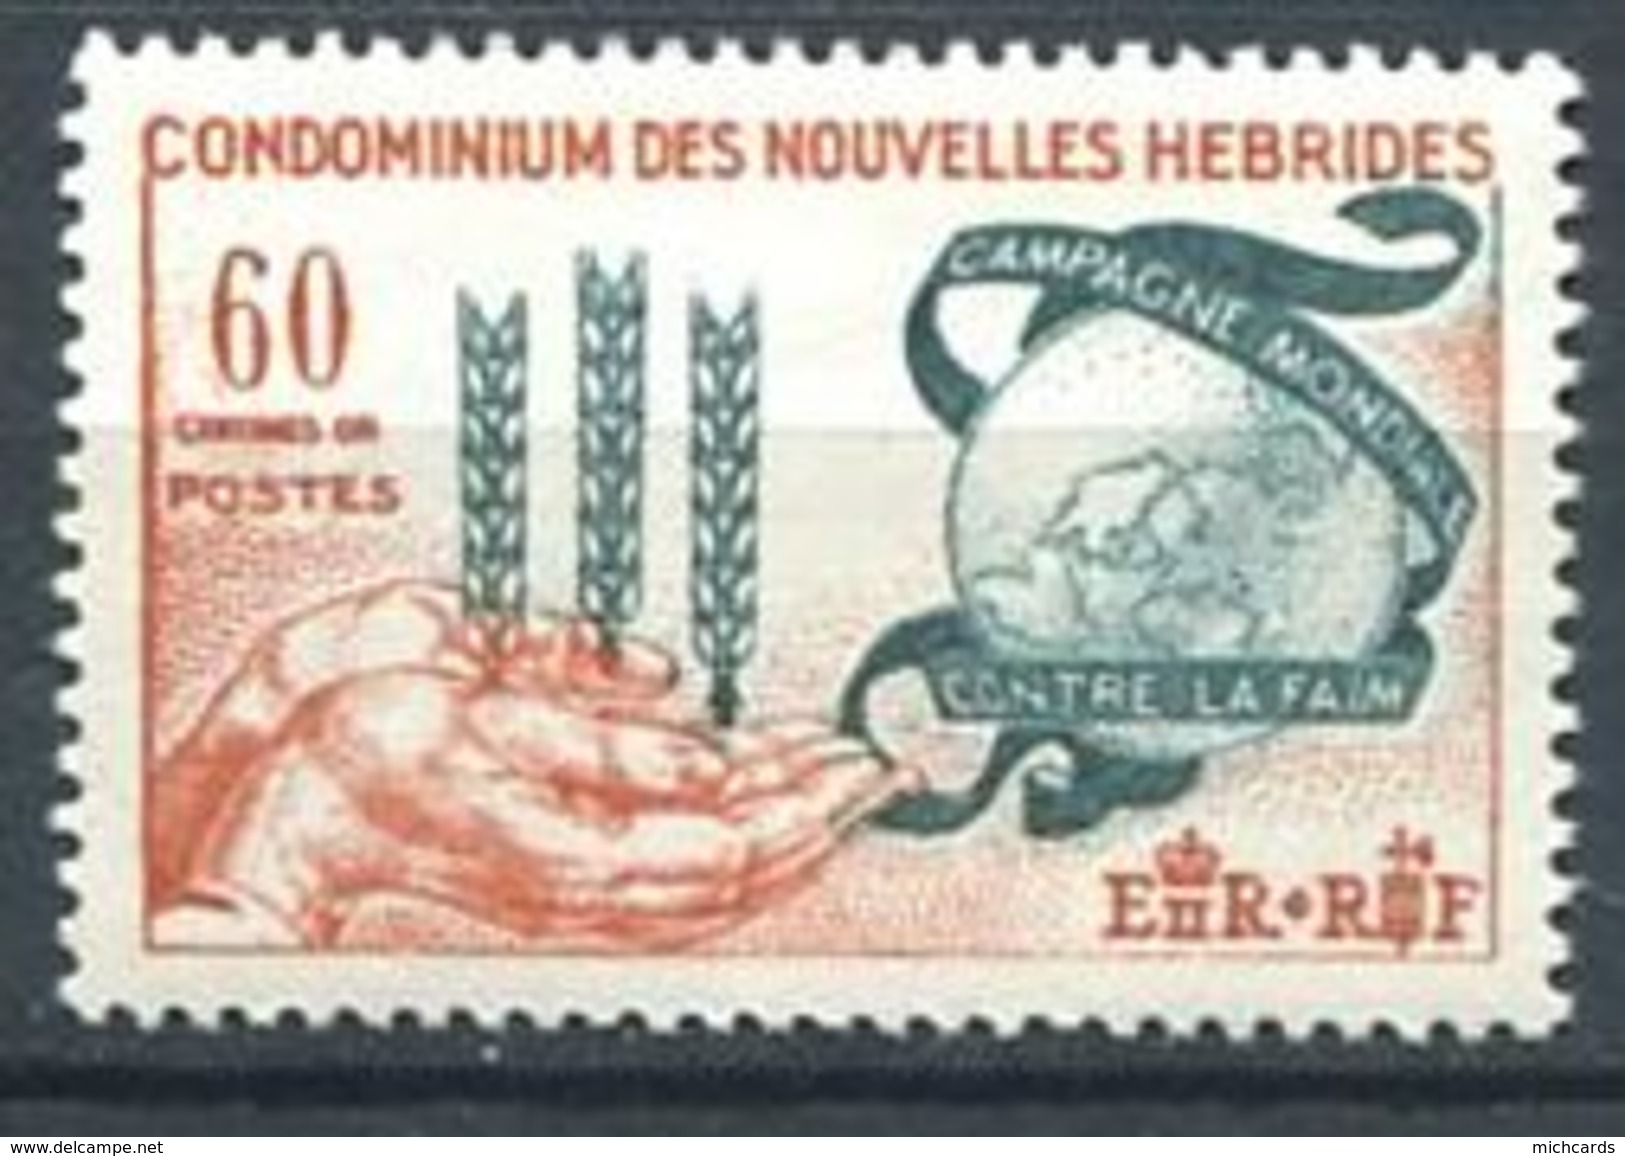 186 NOUVELLES HEBRIDES 1963 - Yvert 197 - Contre La Faim, Main - Neuf ** (MNH) Sans Charniere - Neufs